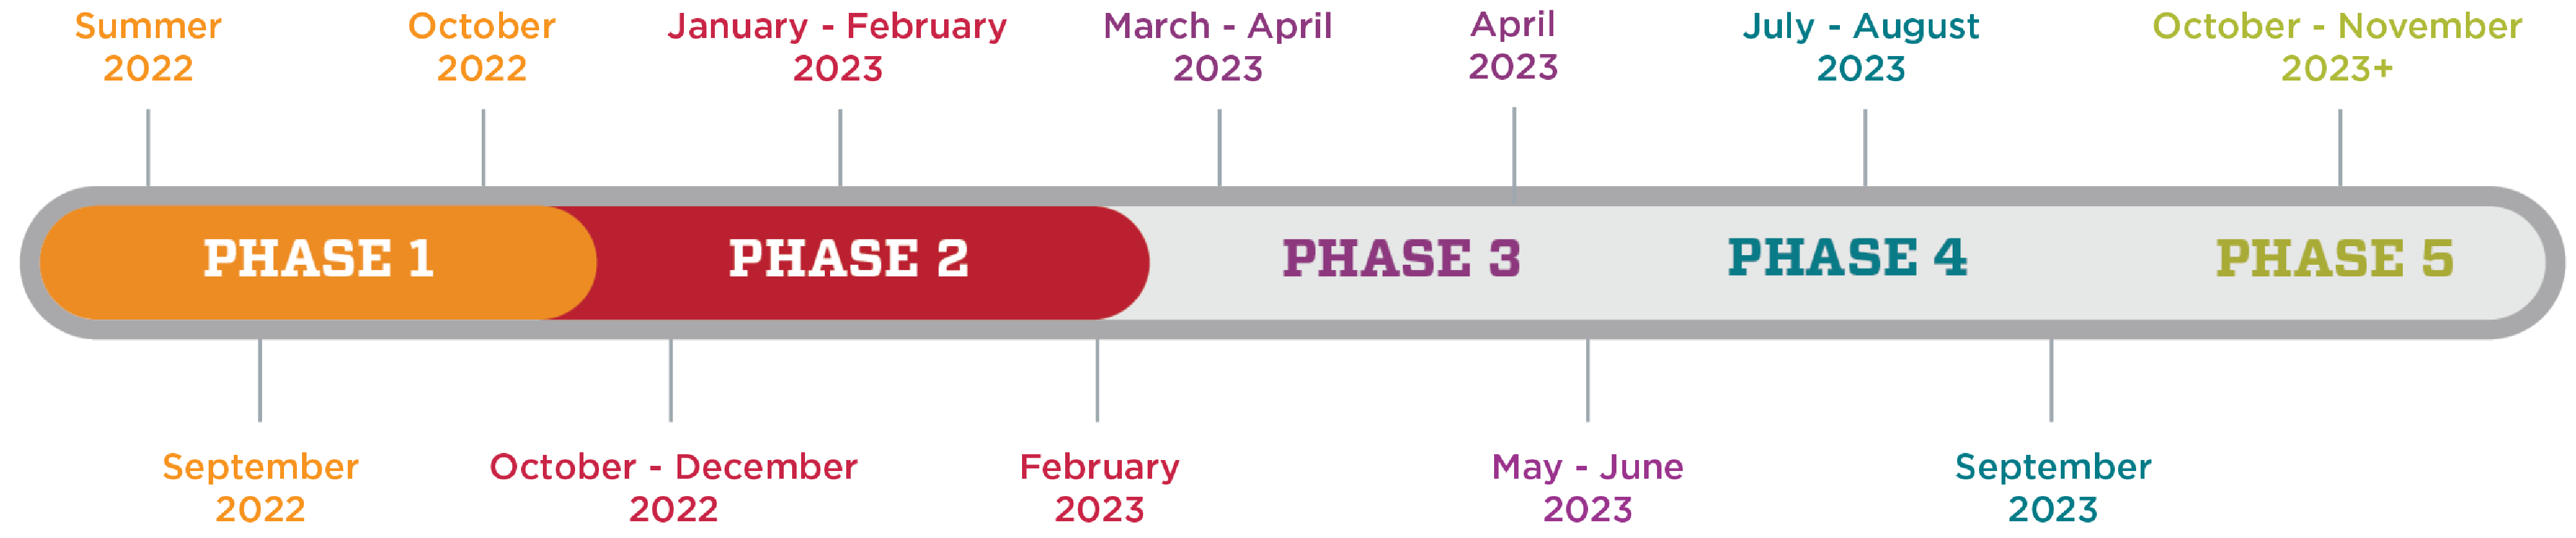 एचएससी के जलवायु सर्वेक्षण की समयरेखा दिखाने वाला एक ग्राफिक। चरण 1 ग्रीष्मकालीन 2022 से अक्टूबर 2022 तक है। चरण 2 अक्टूबर 2022 से फरवरी 2023 तक है। चरण 3 मार्च 2023 से जून 2023 तक है। चरण 4 जुलाई 2023 से सितंबर 2023 तक है। चरण 5 अक्टूबर 2023 से है।